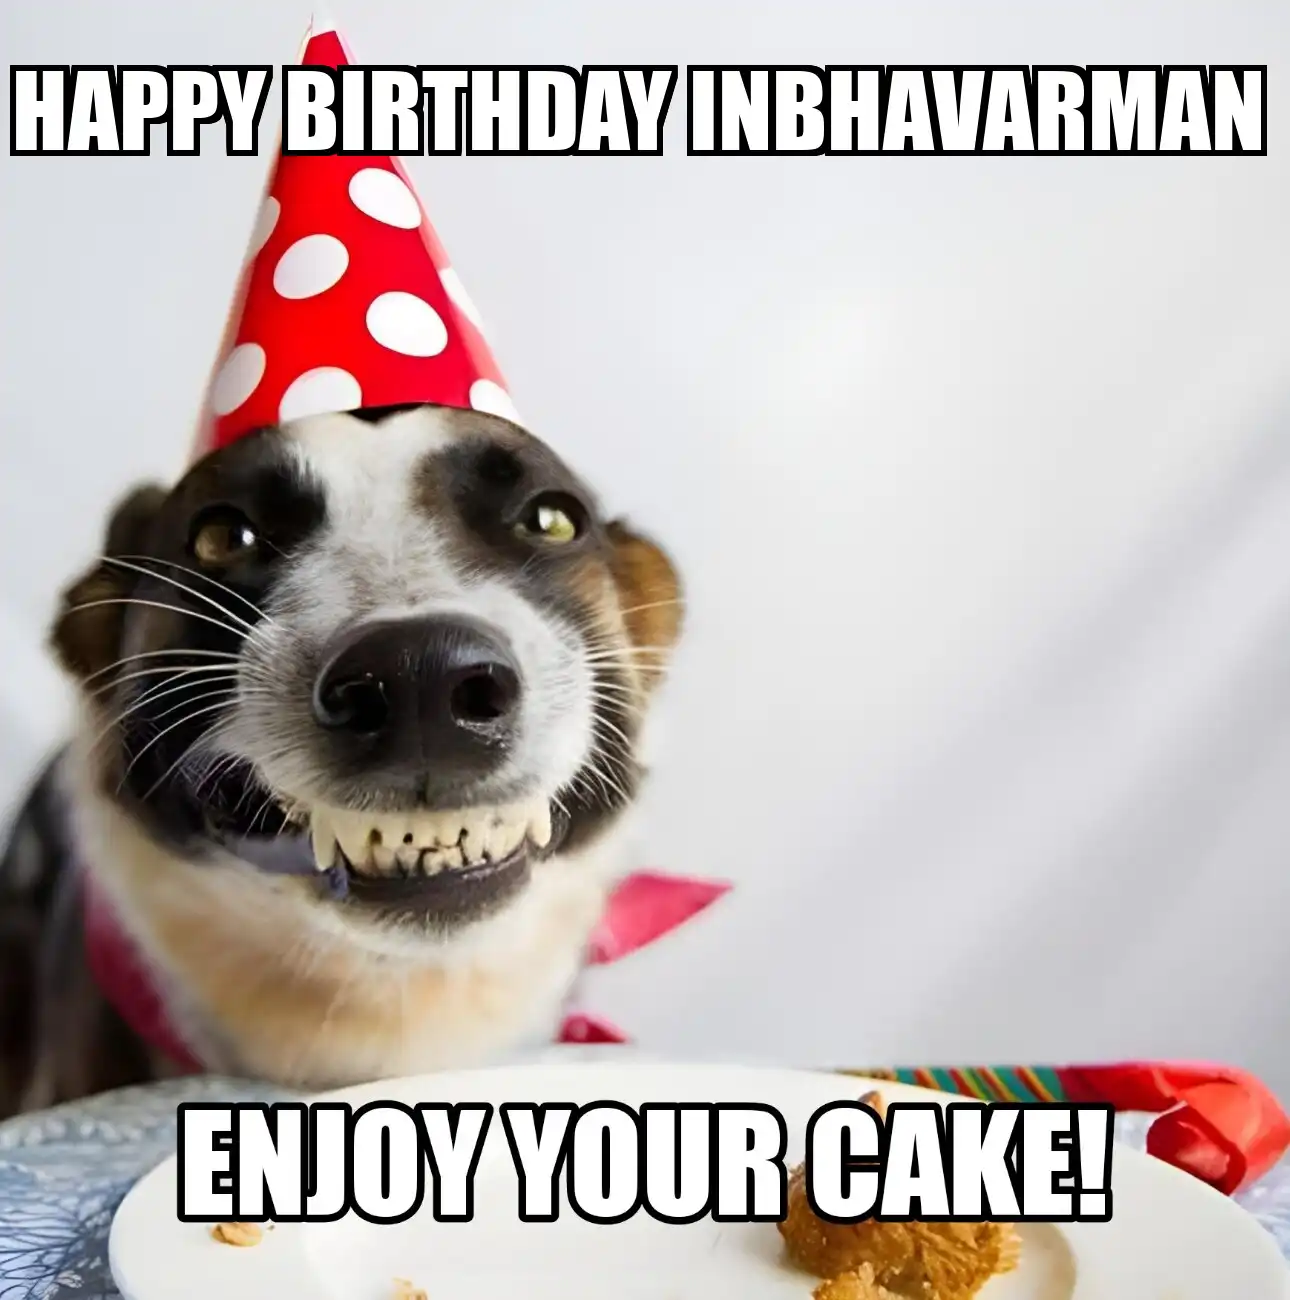 Happy Birthday Inbhavarman Enjoy Your Cake Dog Meme